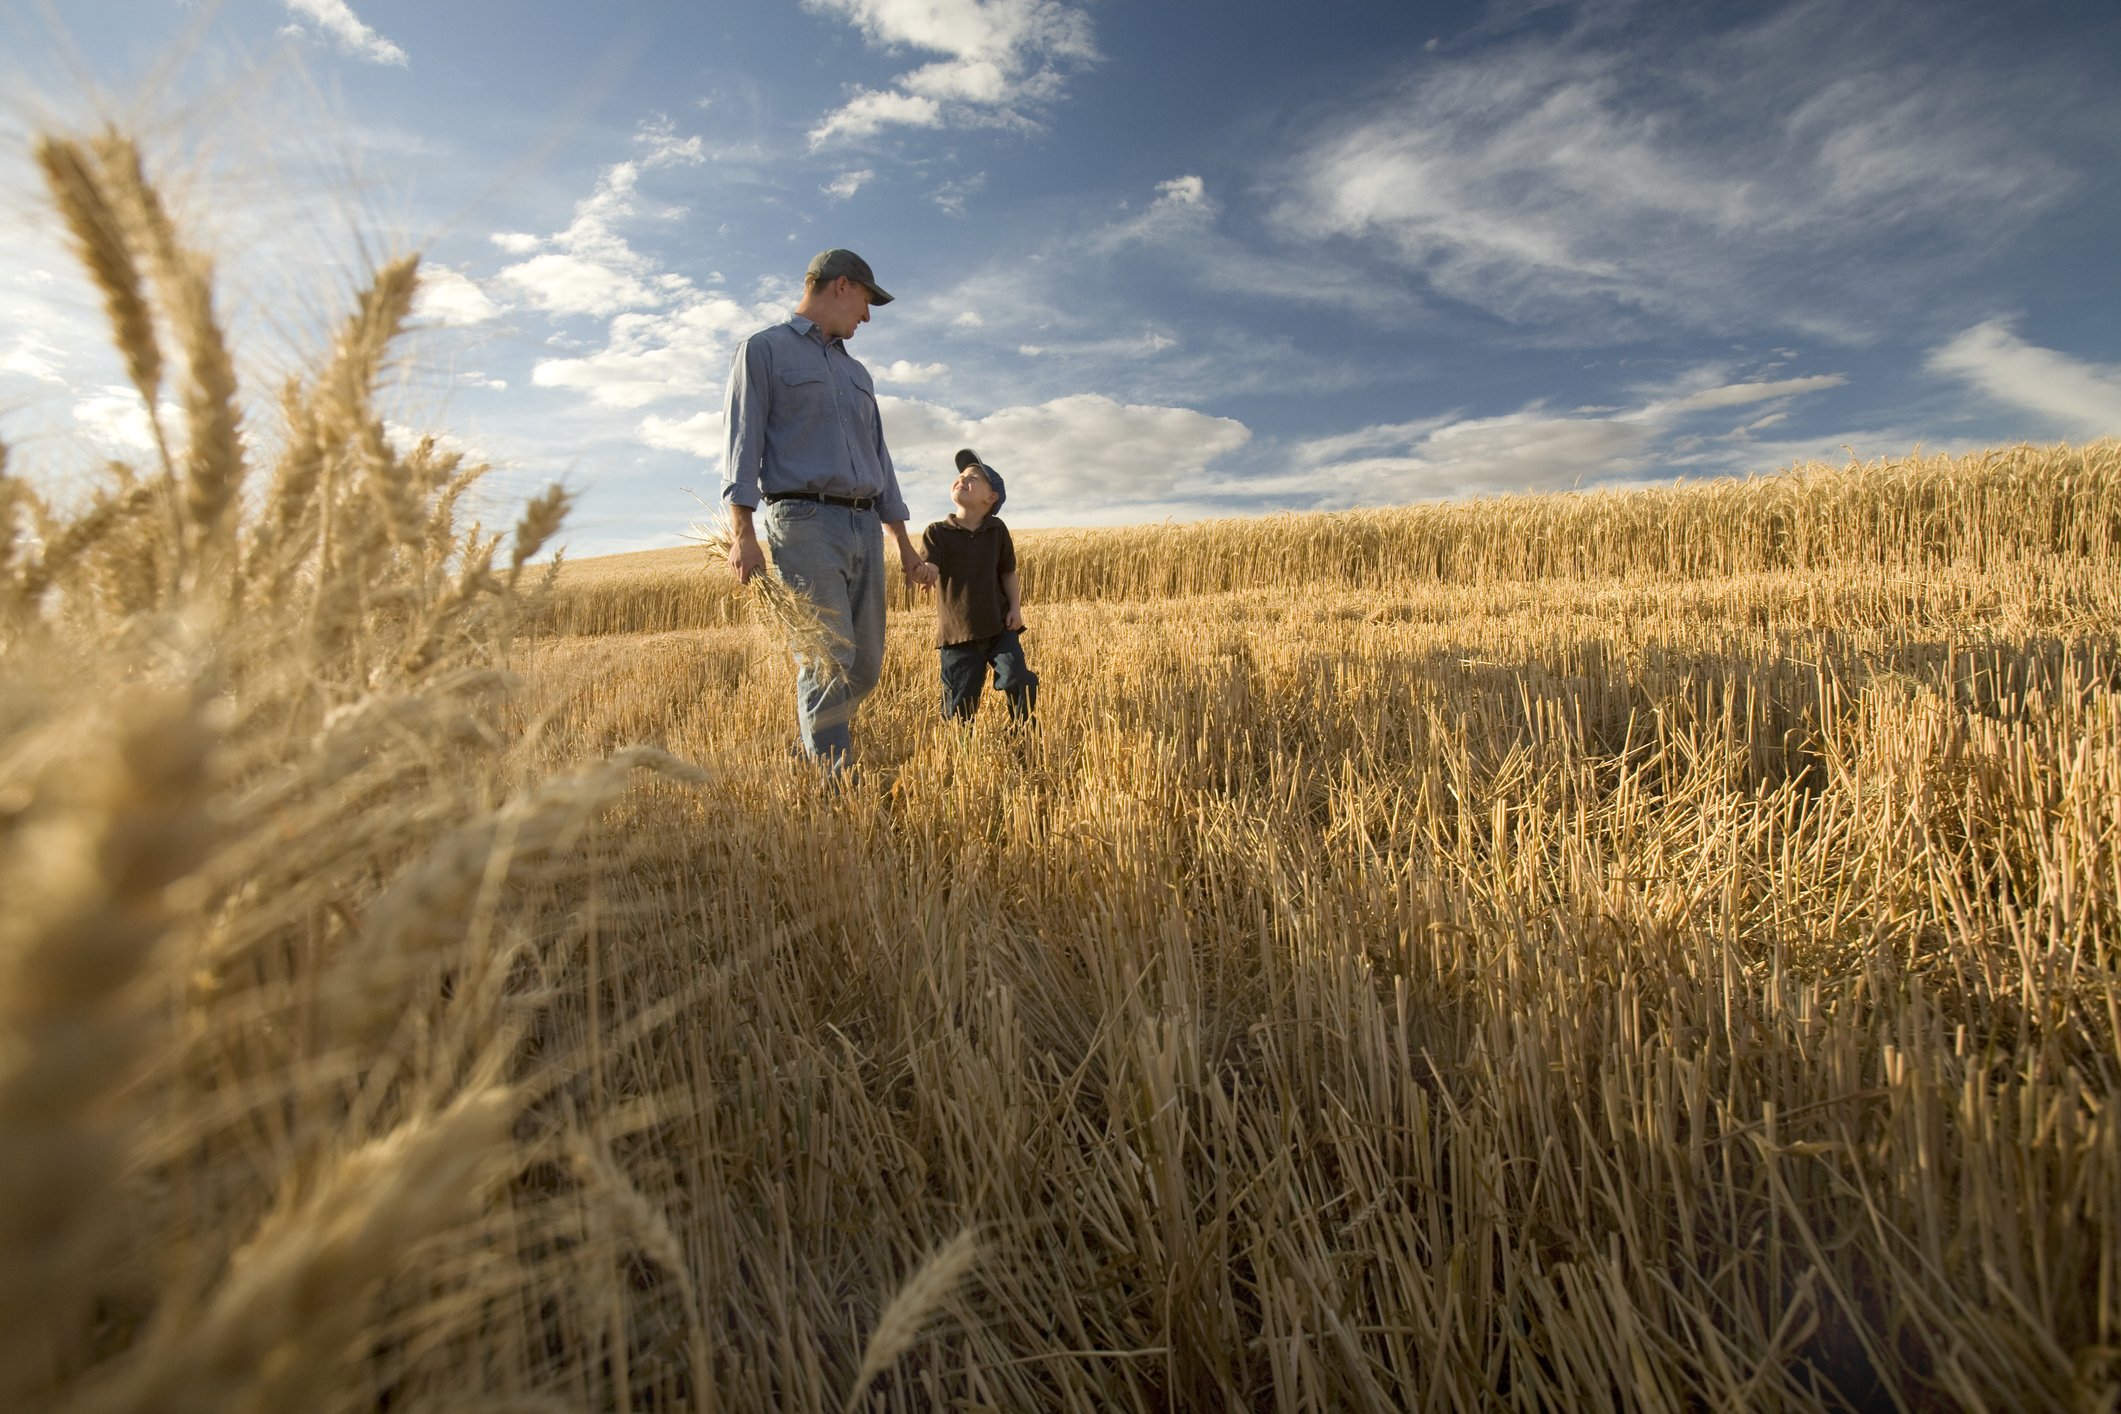 Leo a emmené son fils à la ferme. | Photo : Getty Images